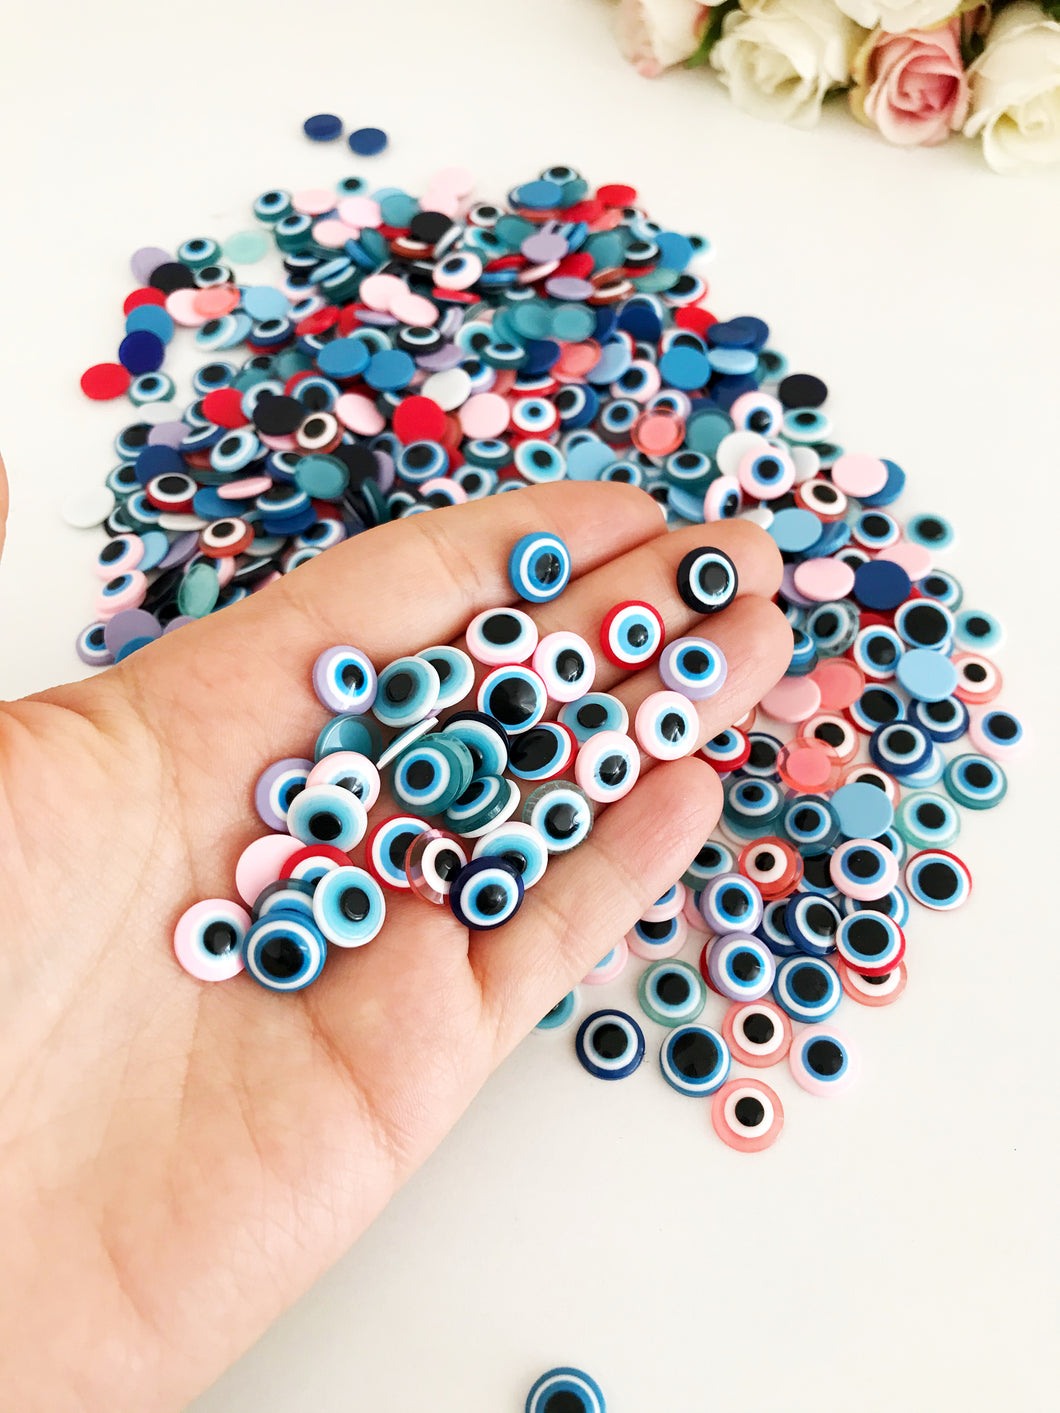 Evil Eye Flat Back Resin Cabochons Beads, 10mm - Evileyefavor